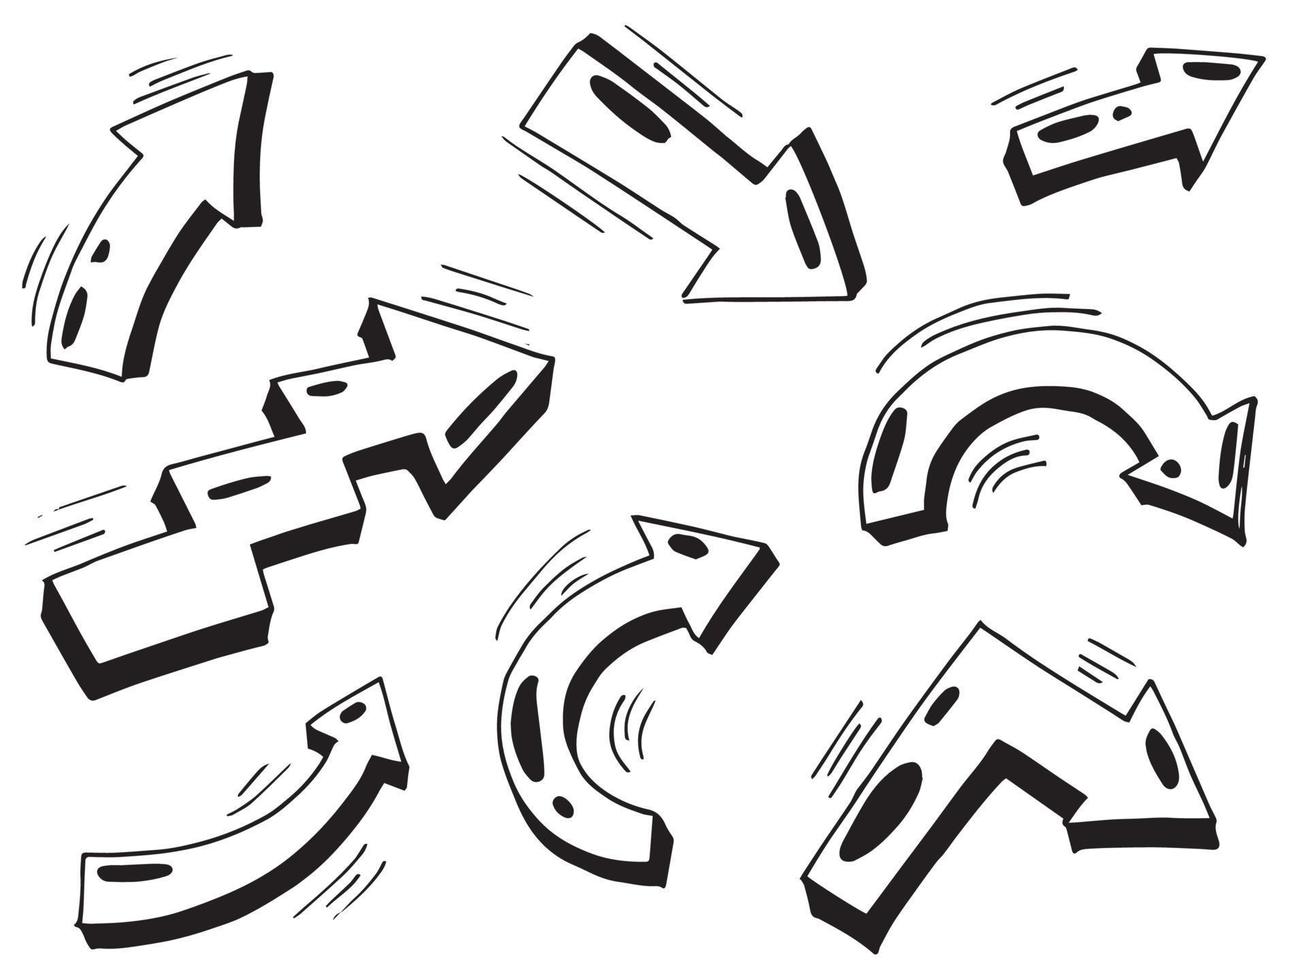 conjunto de ícones de setas desenhadas à mão. ícone de seta com várias direções. ilustração vetorial doodle. Isolado em um fundo branco. vetor